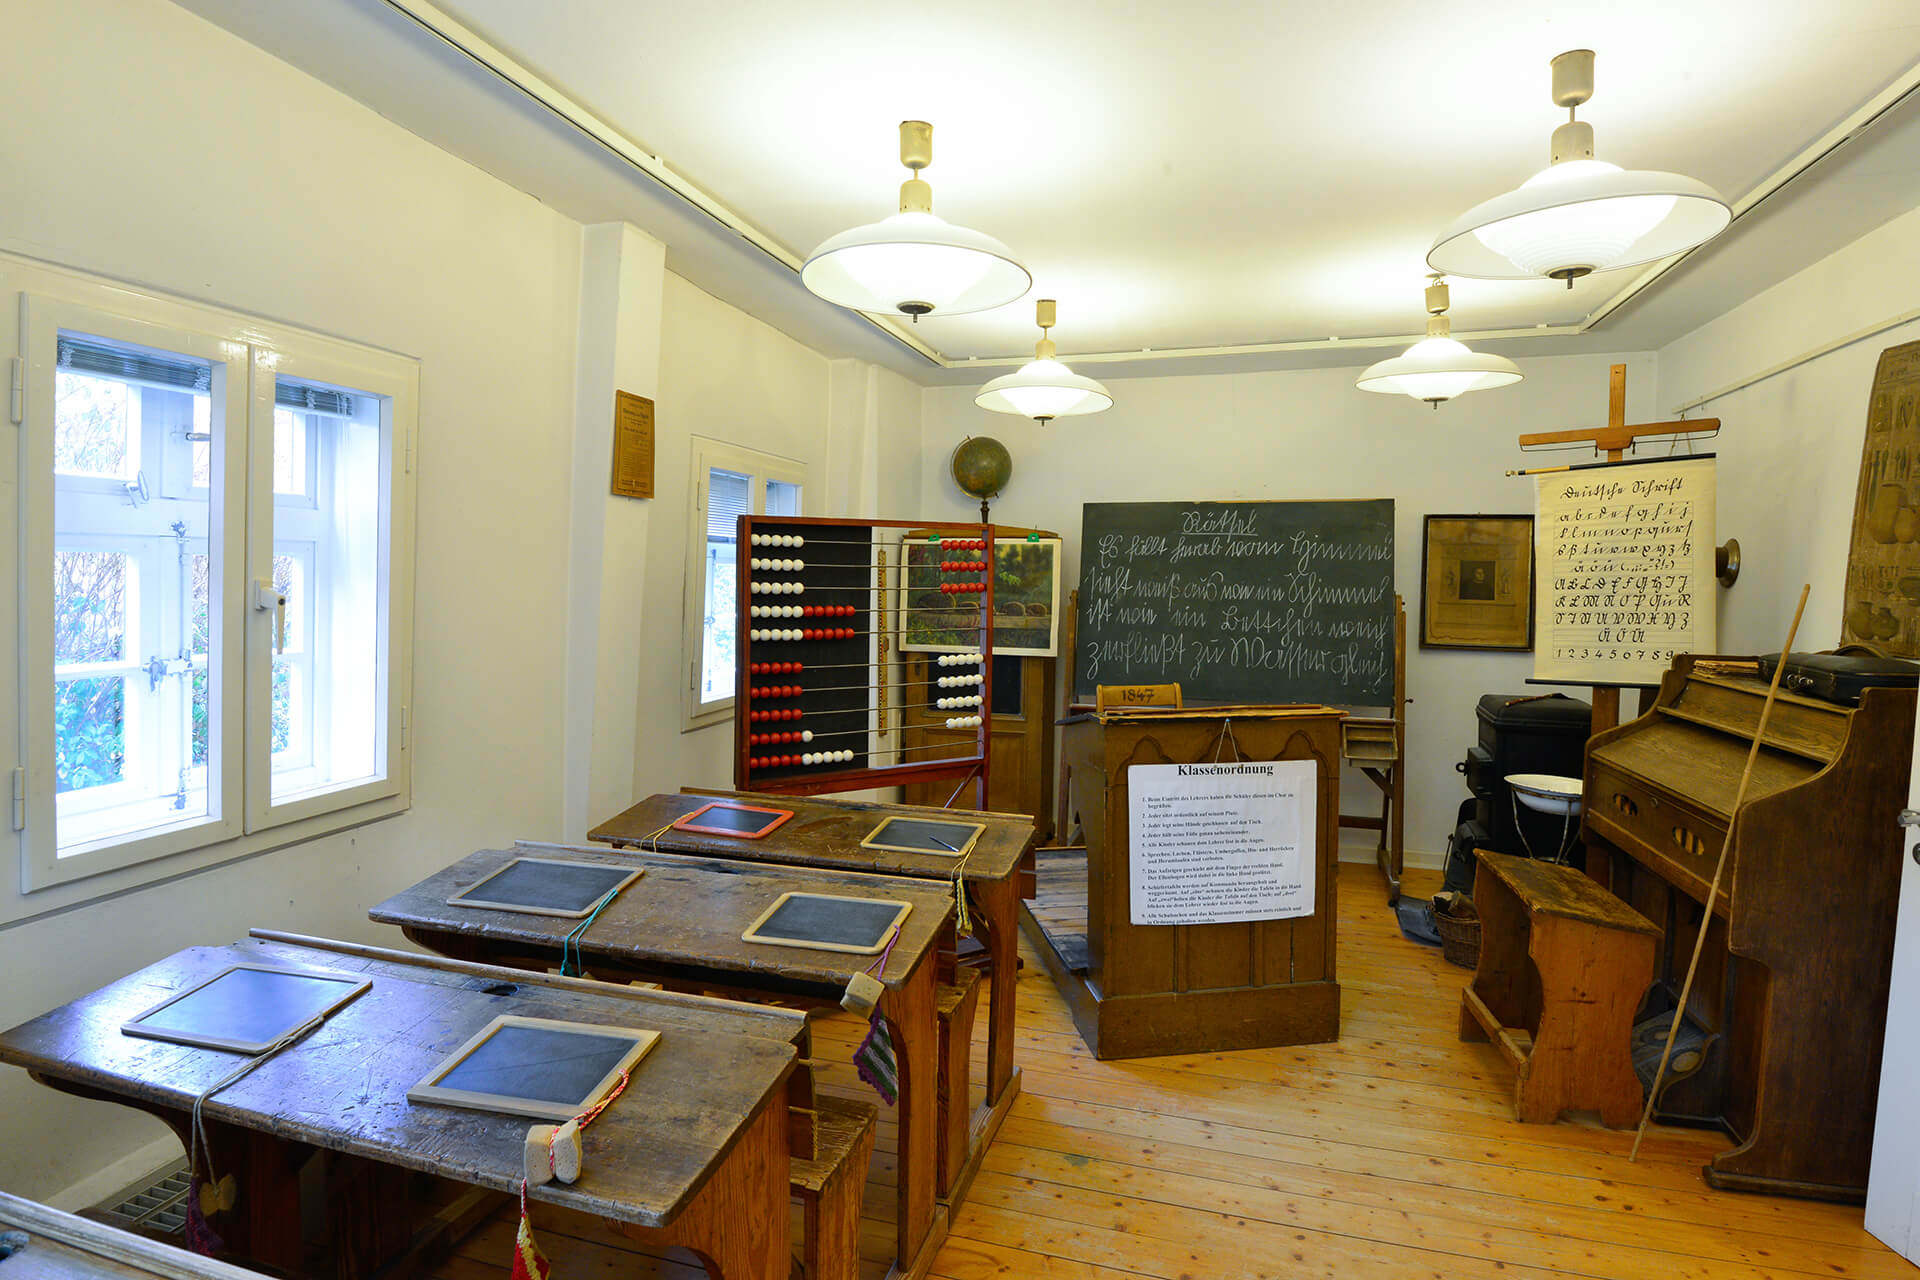 Tafel im Klassenzimmer im Schulmuseum Steinhorst in der Südheide Gifhorn